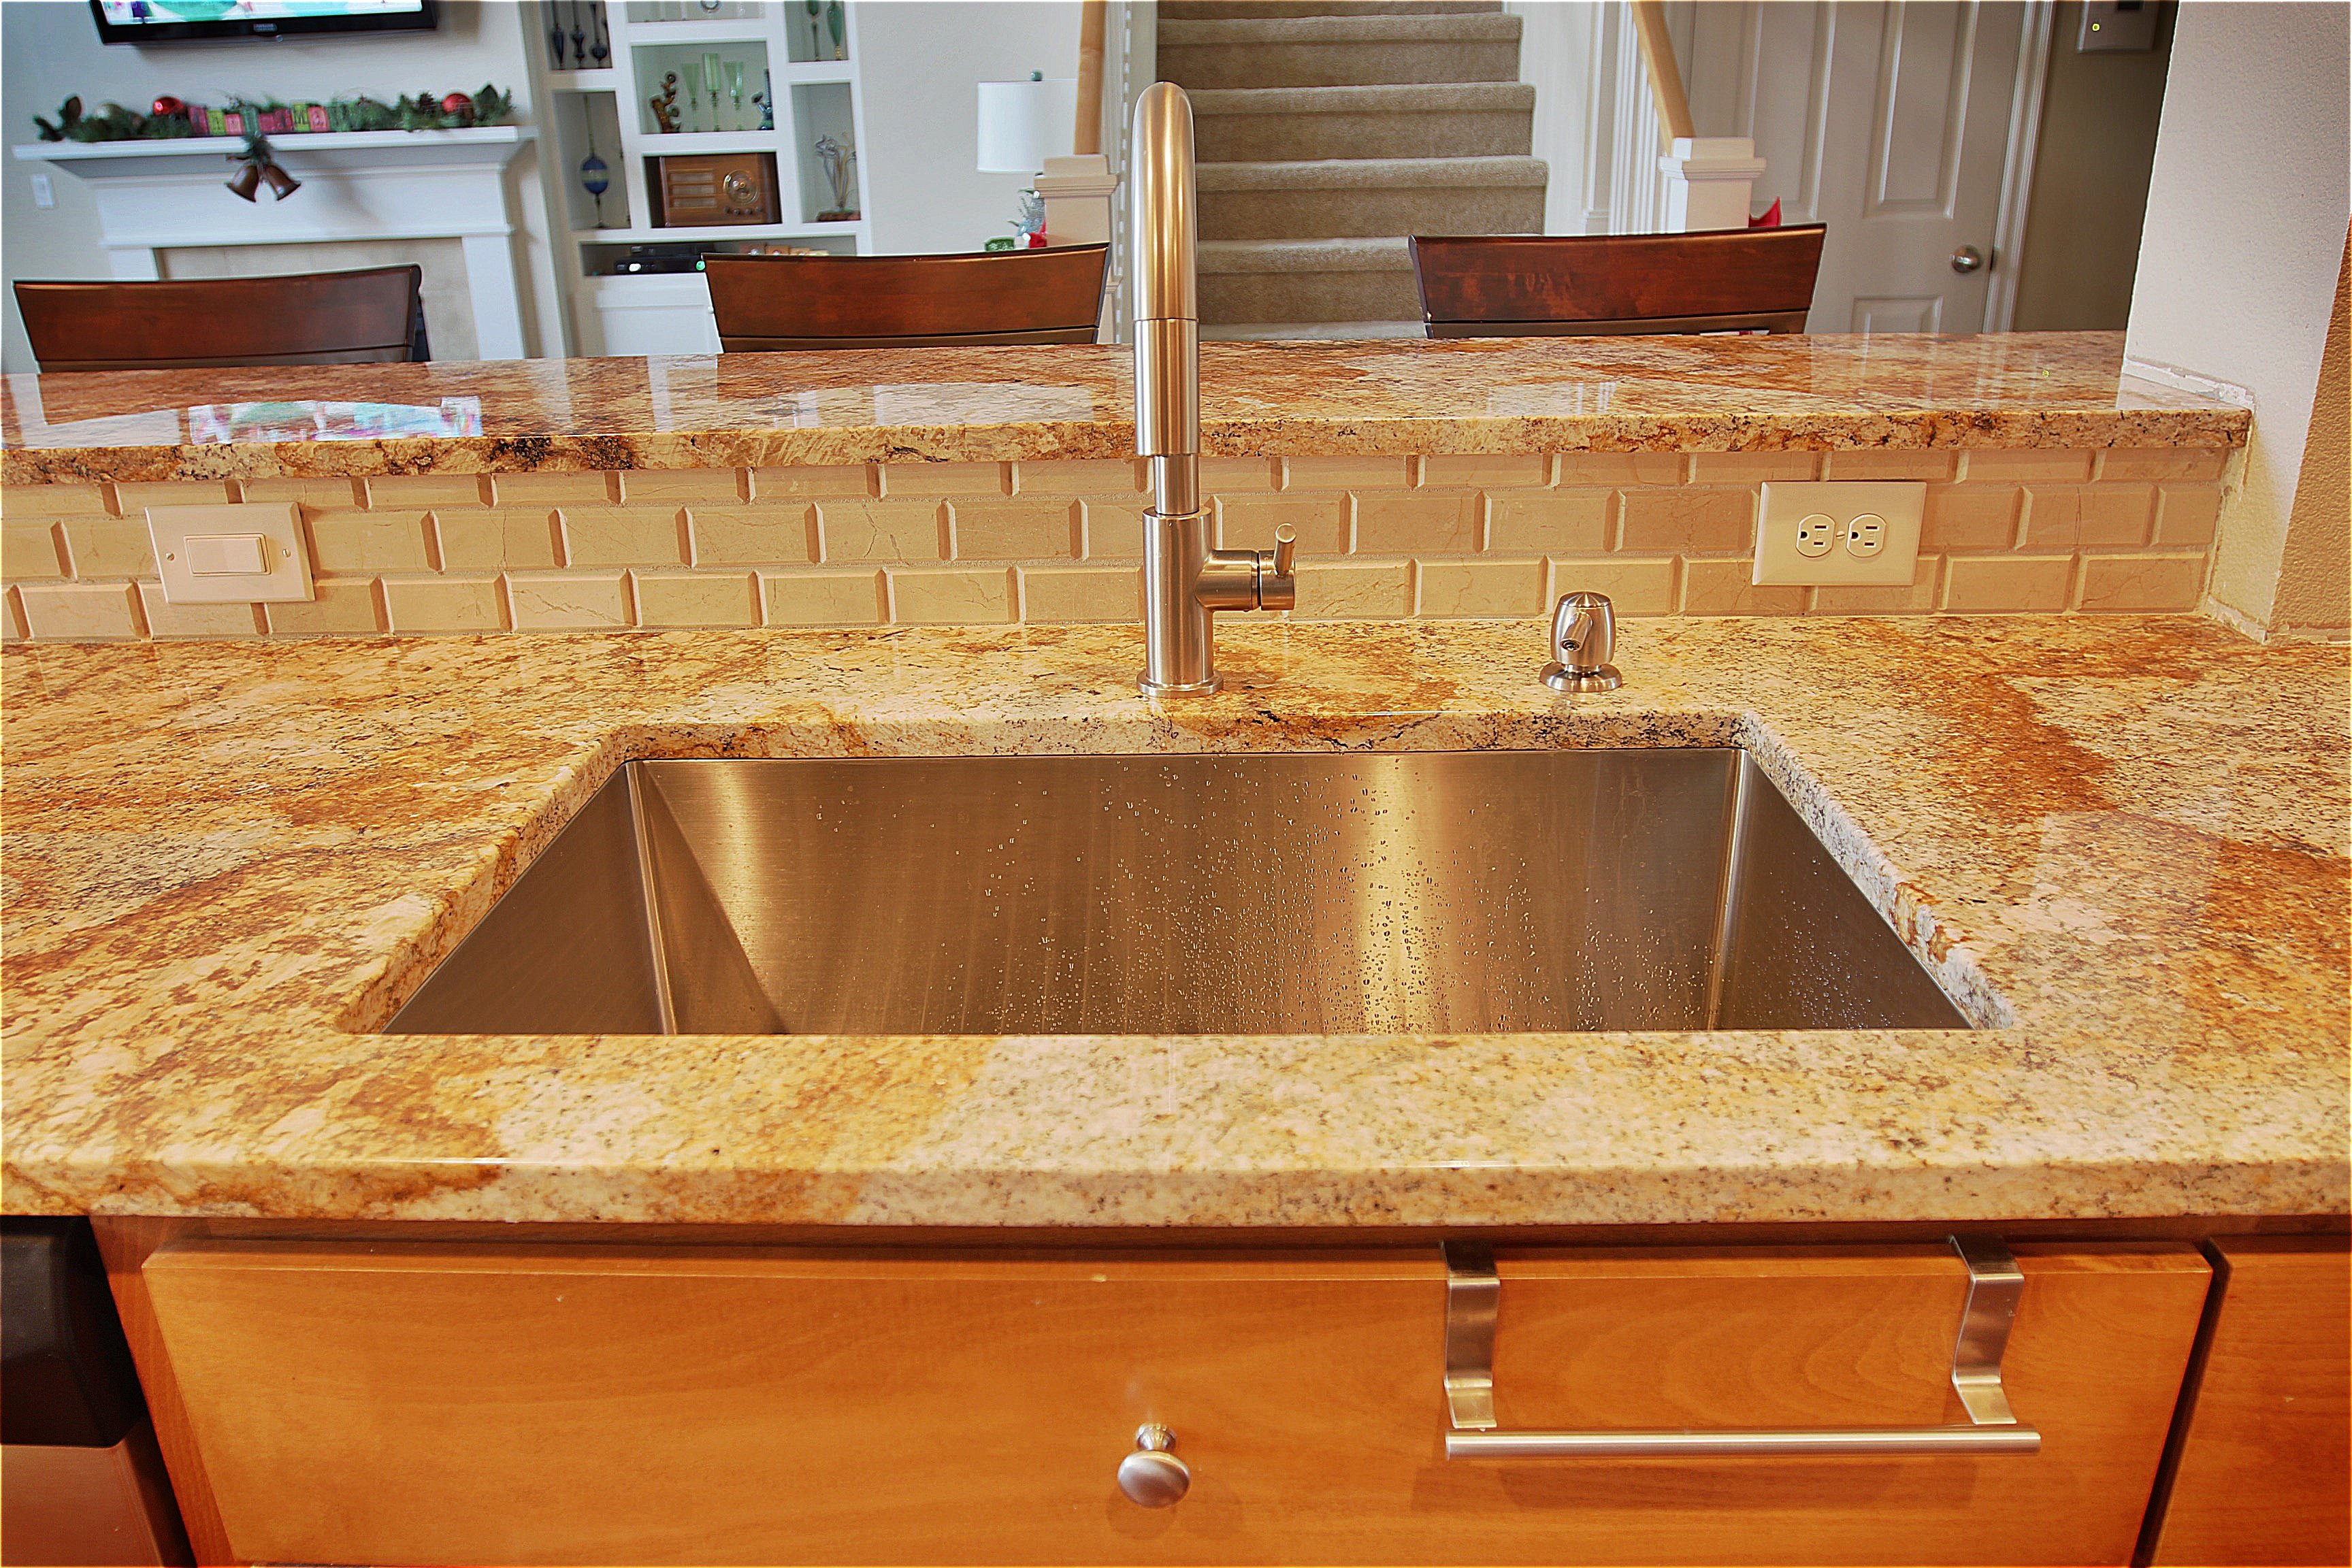 replace kitchen sink under granite